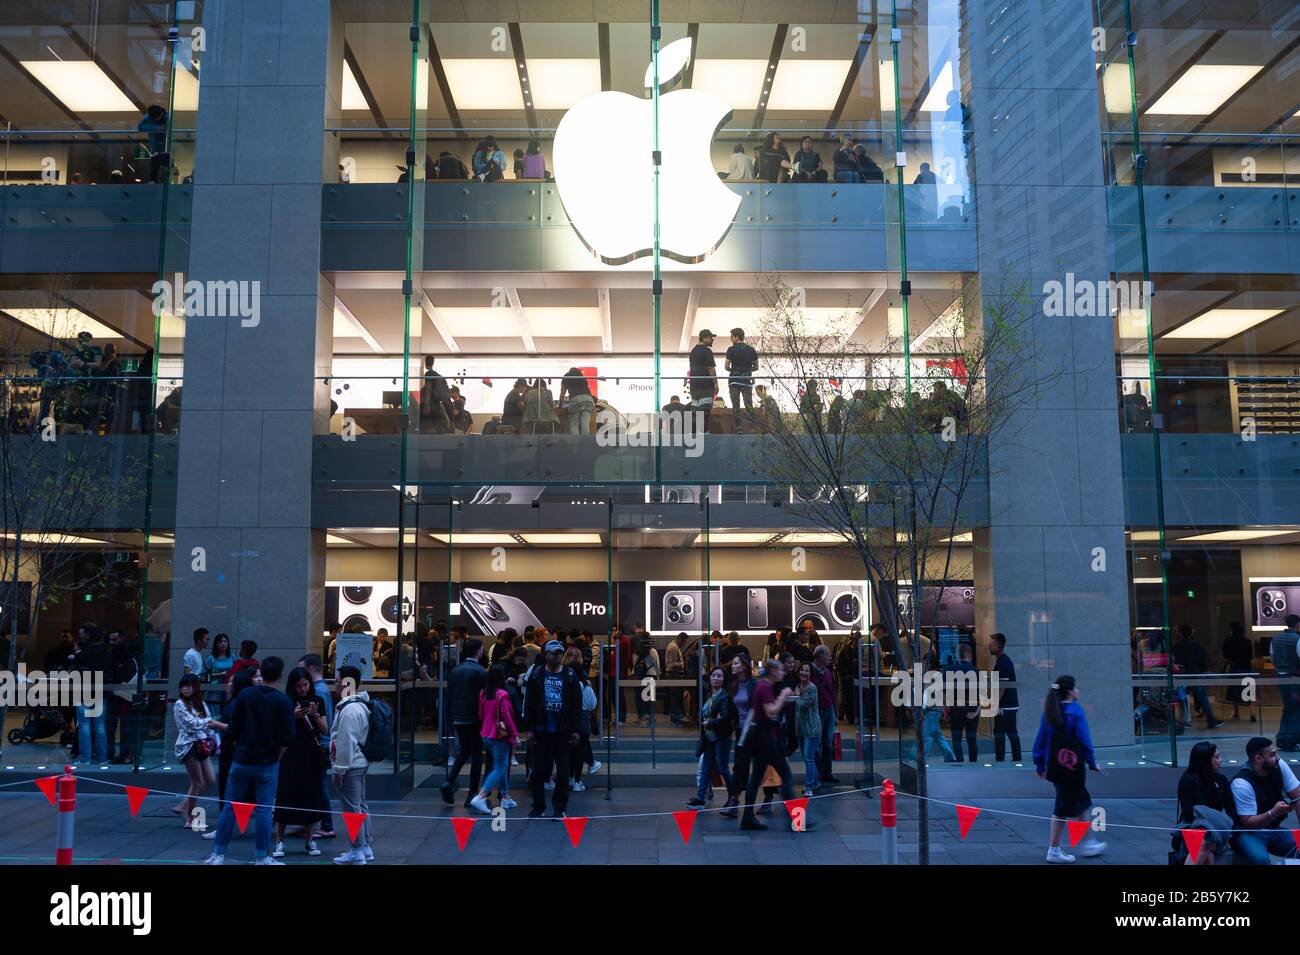 21.09.2019, Sydney, nuovo Galles del Sud, Australia - Persone di fronte a un Apple Store nel centro della città. Foto Stock